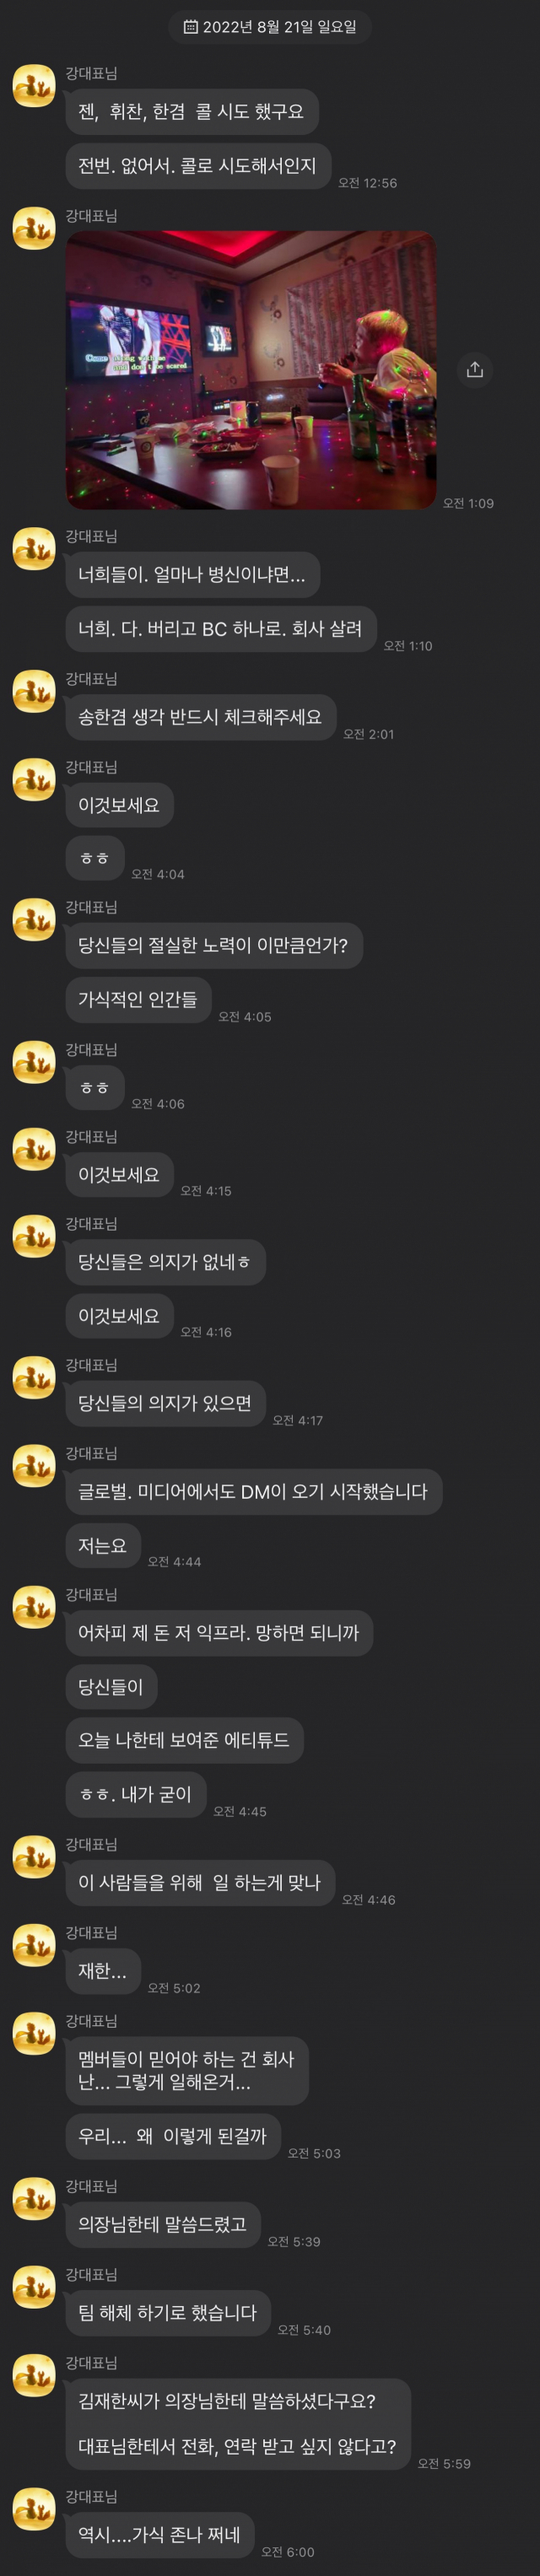 오메가엑스 측이 공개한 메신저